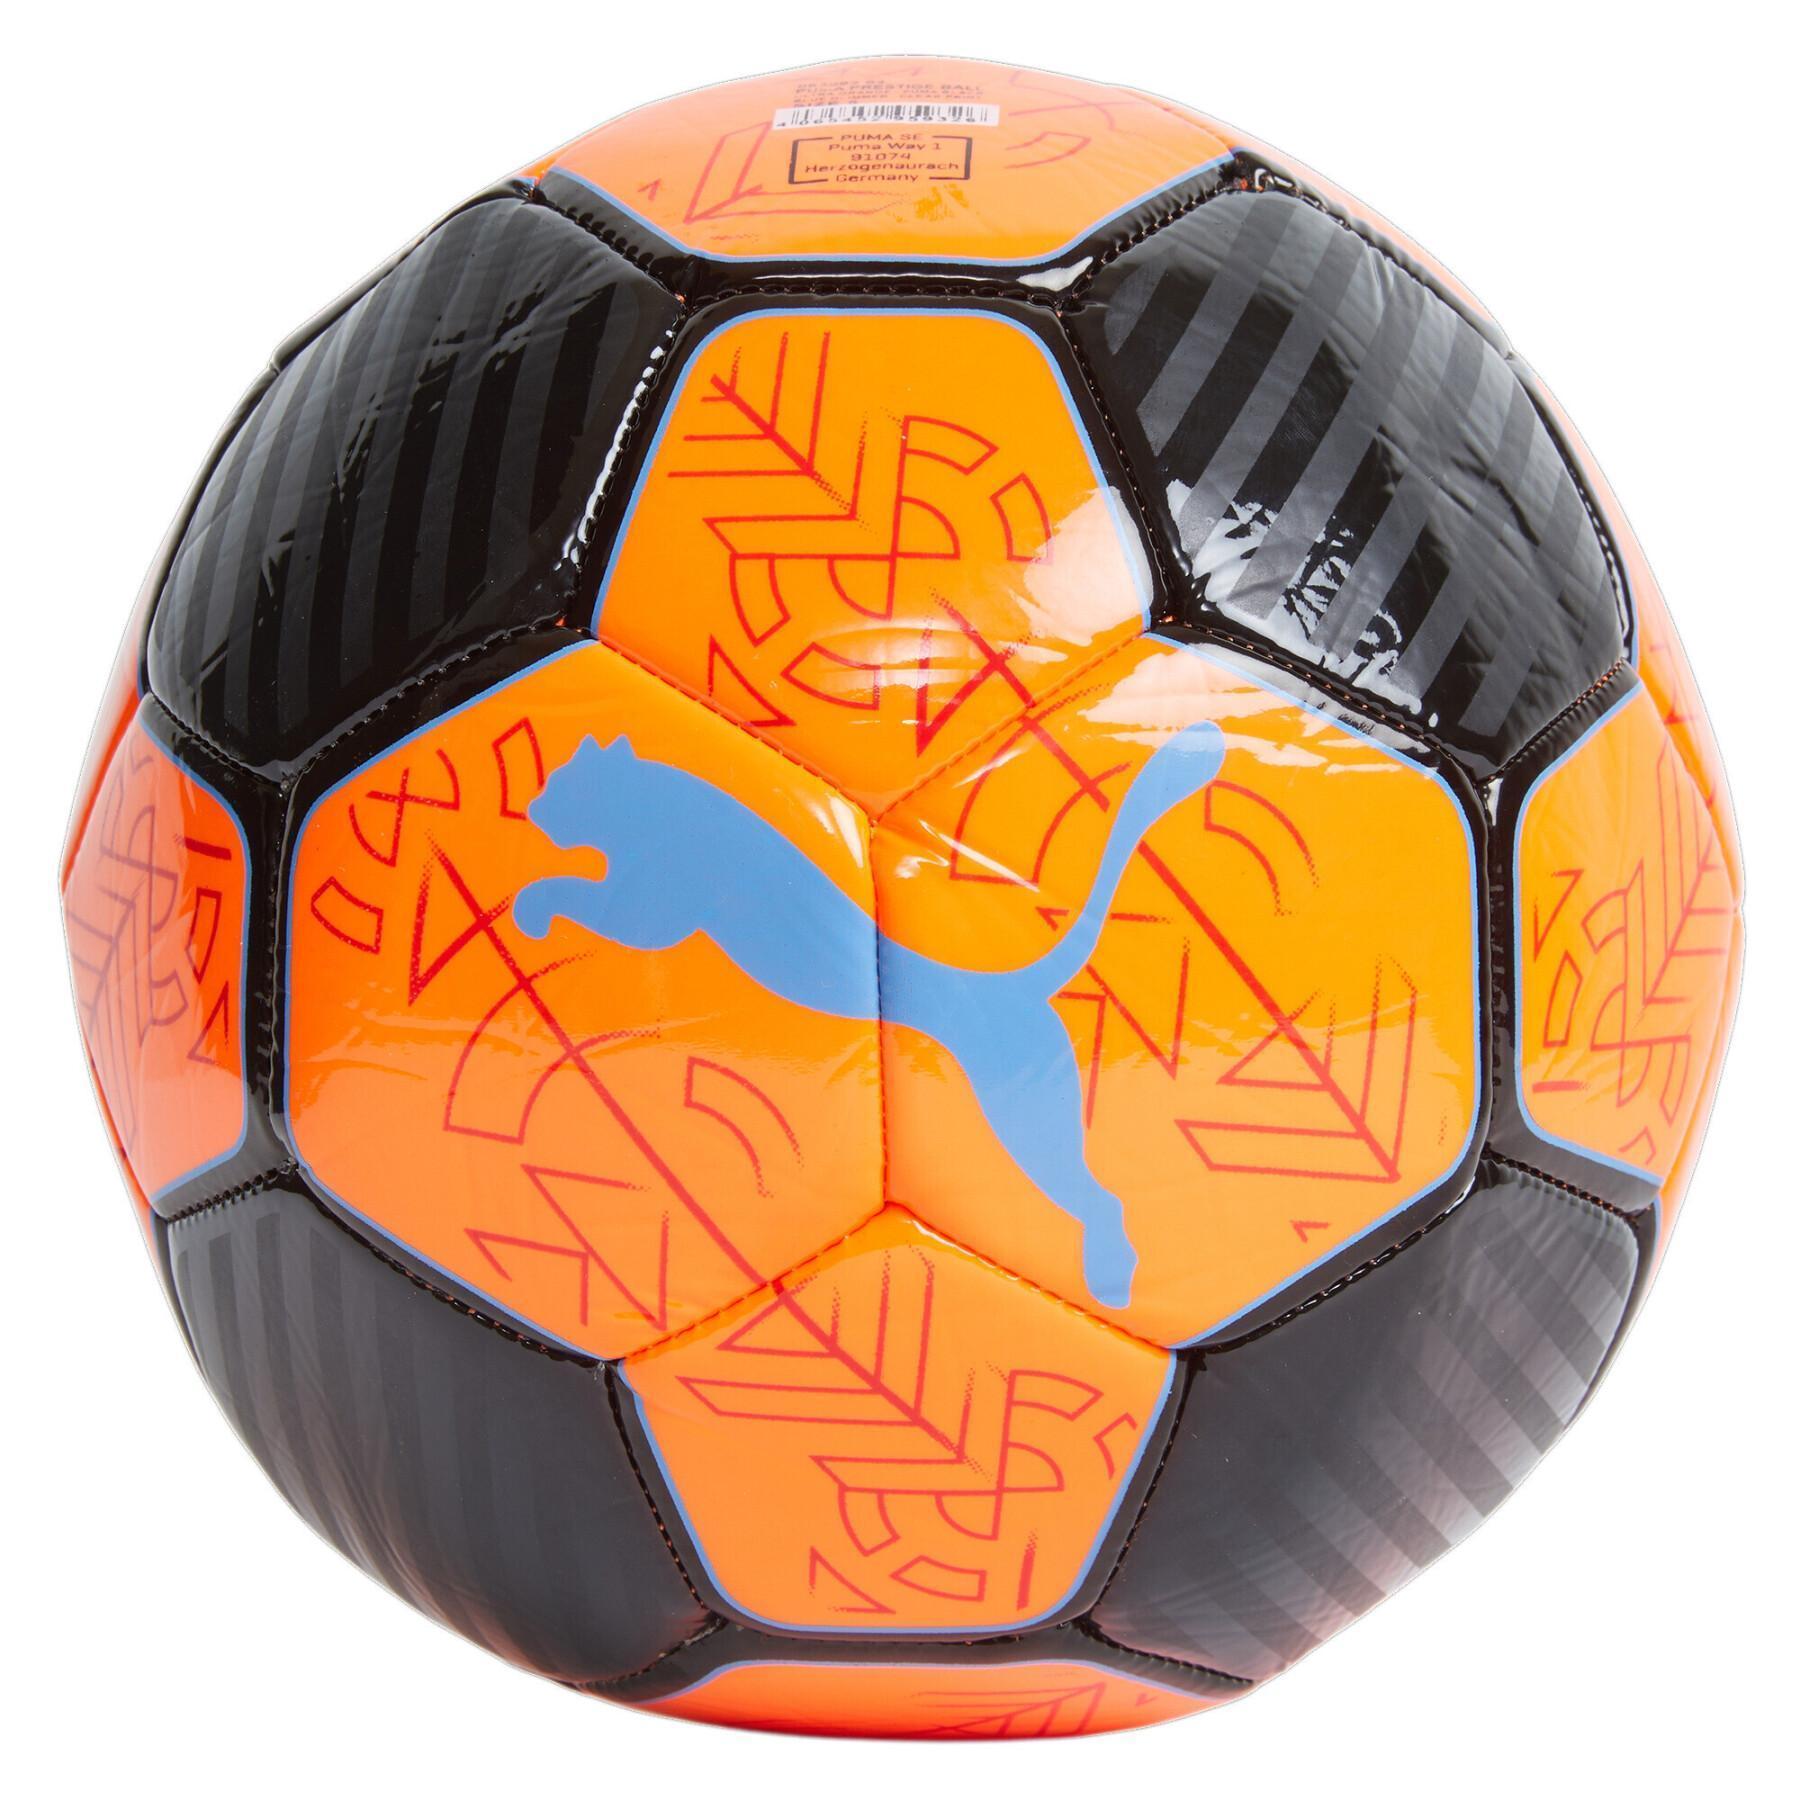 Ballon Olympique Marseille Noir et Orange - Espace Foot